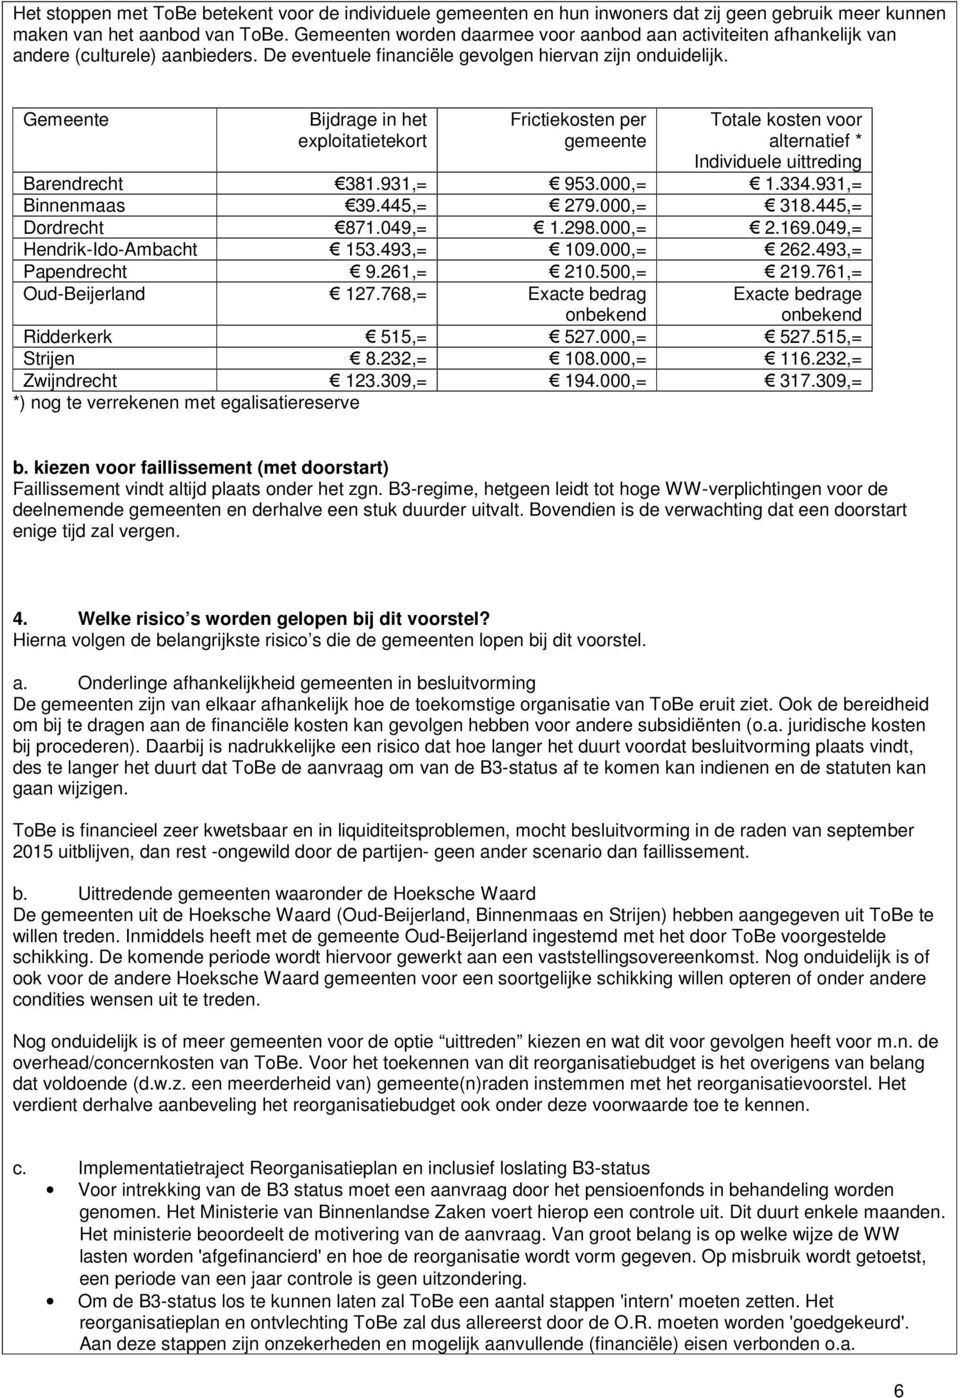 Gemeente Bijdrage in het exploitatietekort Frictiekosten per gemeente Totale kosten voor alternatief * Individuele uittreding Barendrecht 381.931,= 953.000,= 1.334.931,= Binnenmaas 39.445,= 279.